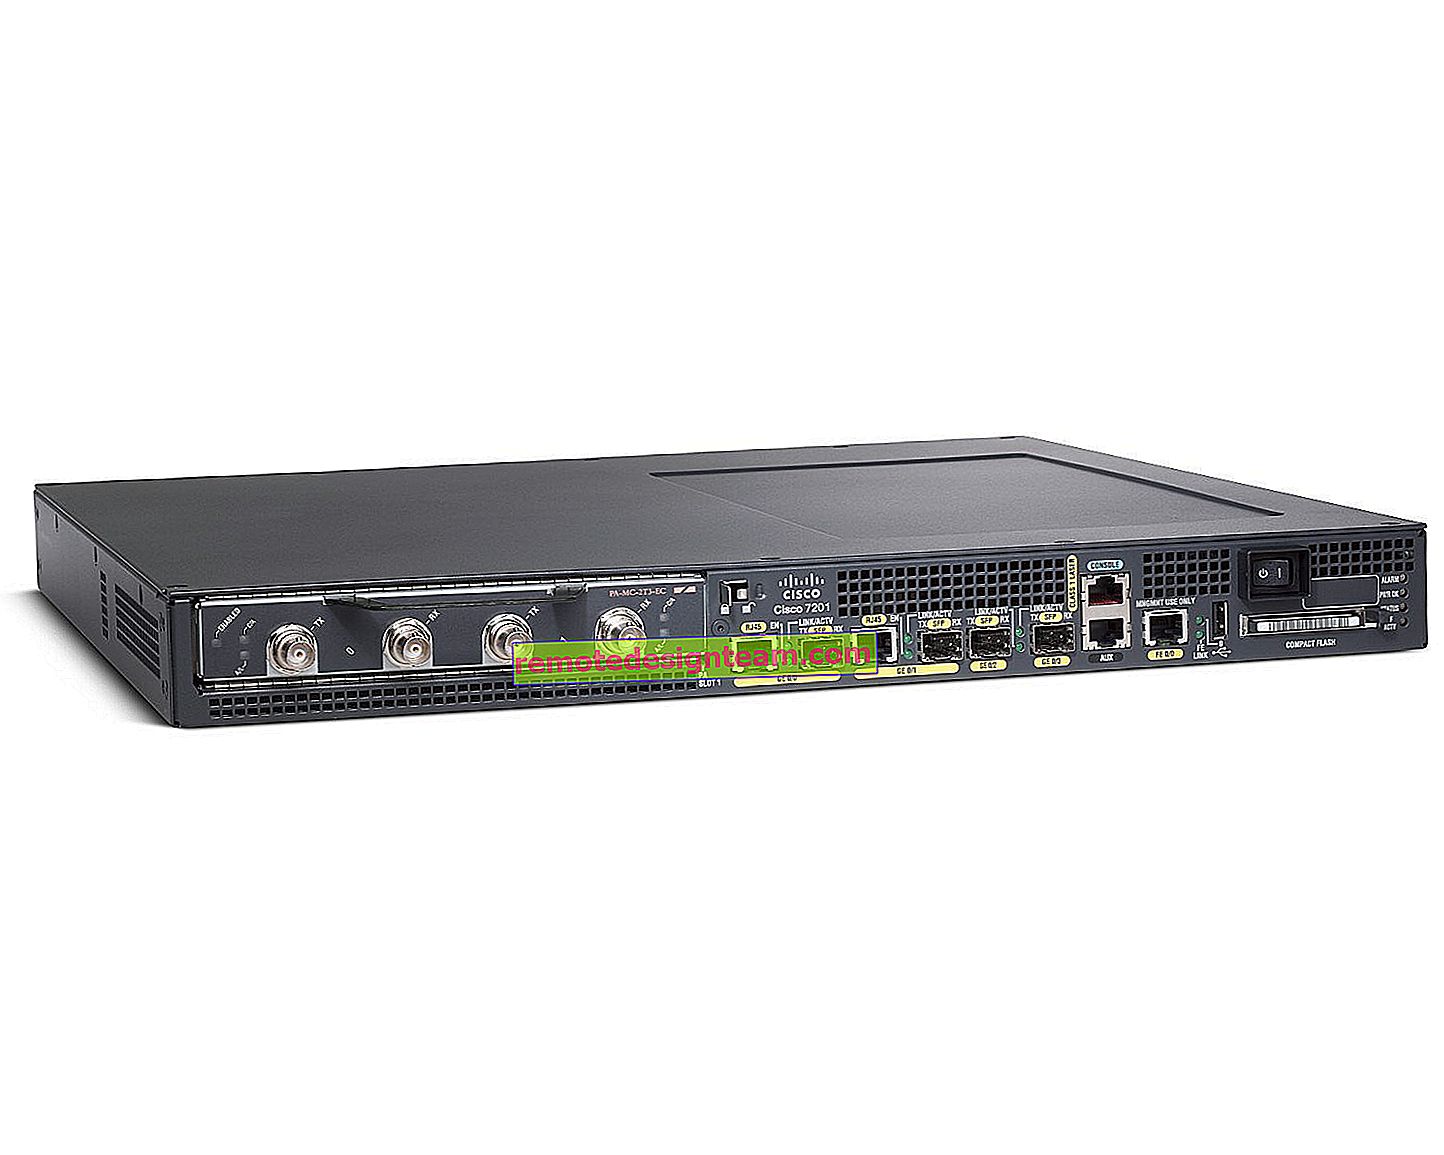 Konfigurowanie Linksys E1200 - podłączanie, konfigurowanie Internetu i sieci Wi-Fi